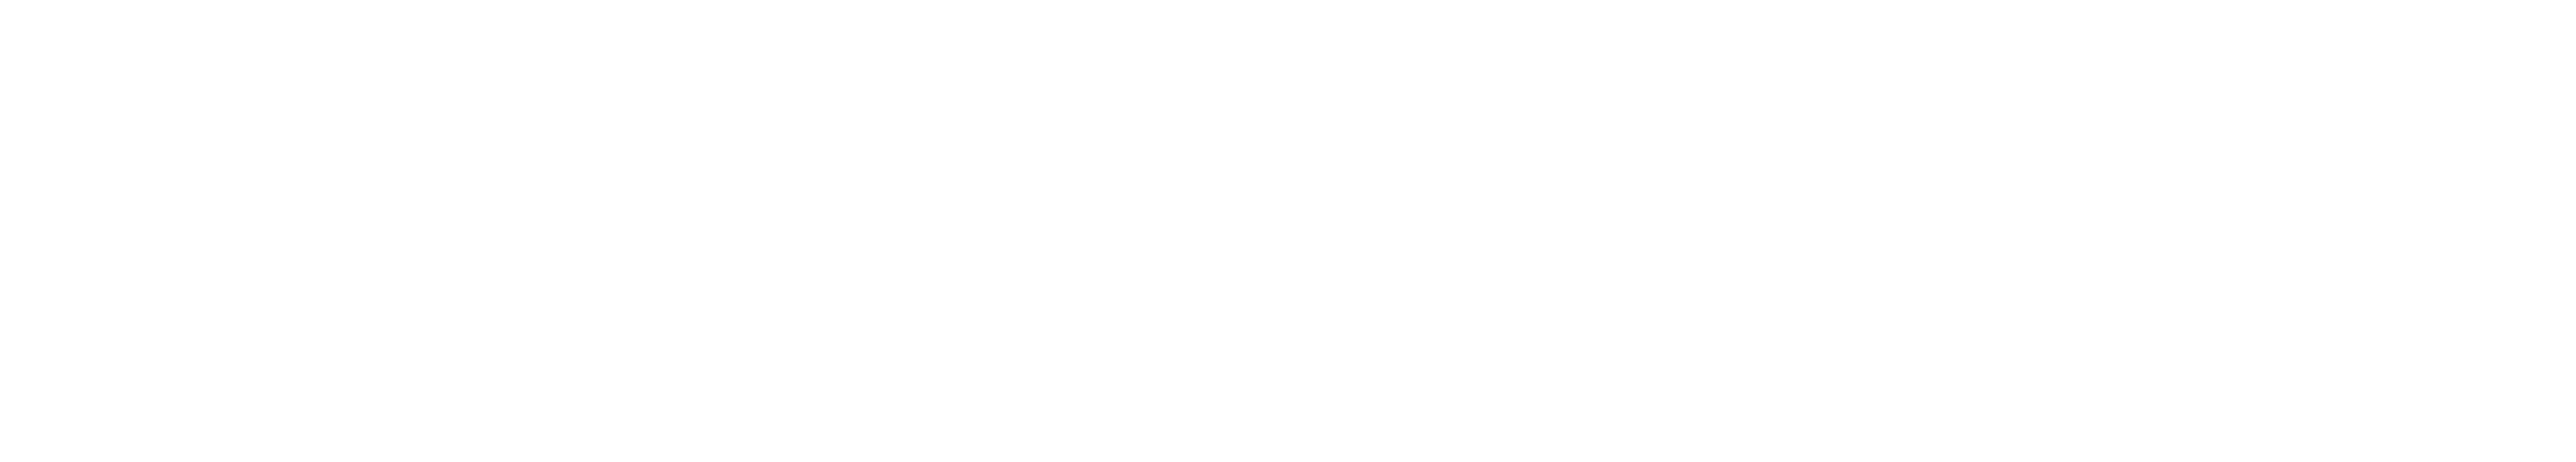 Strato Earth logo